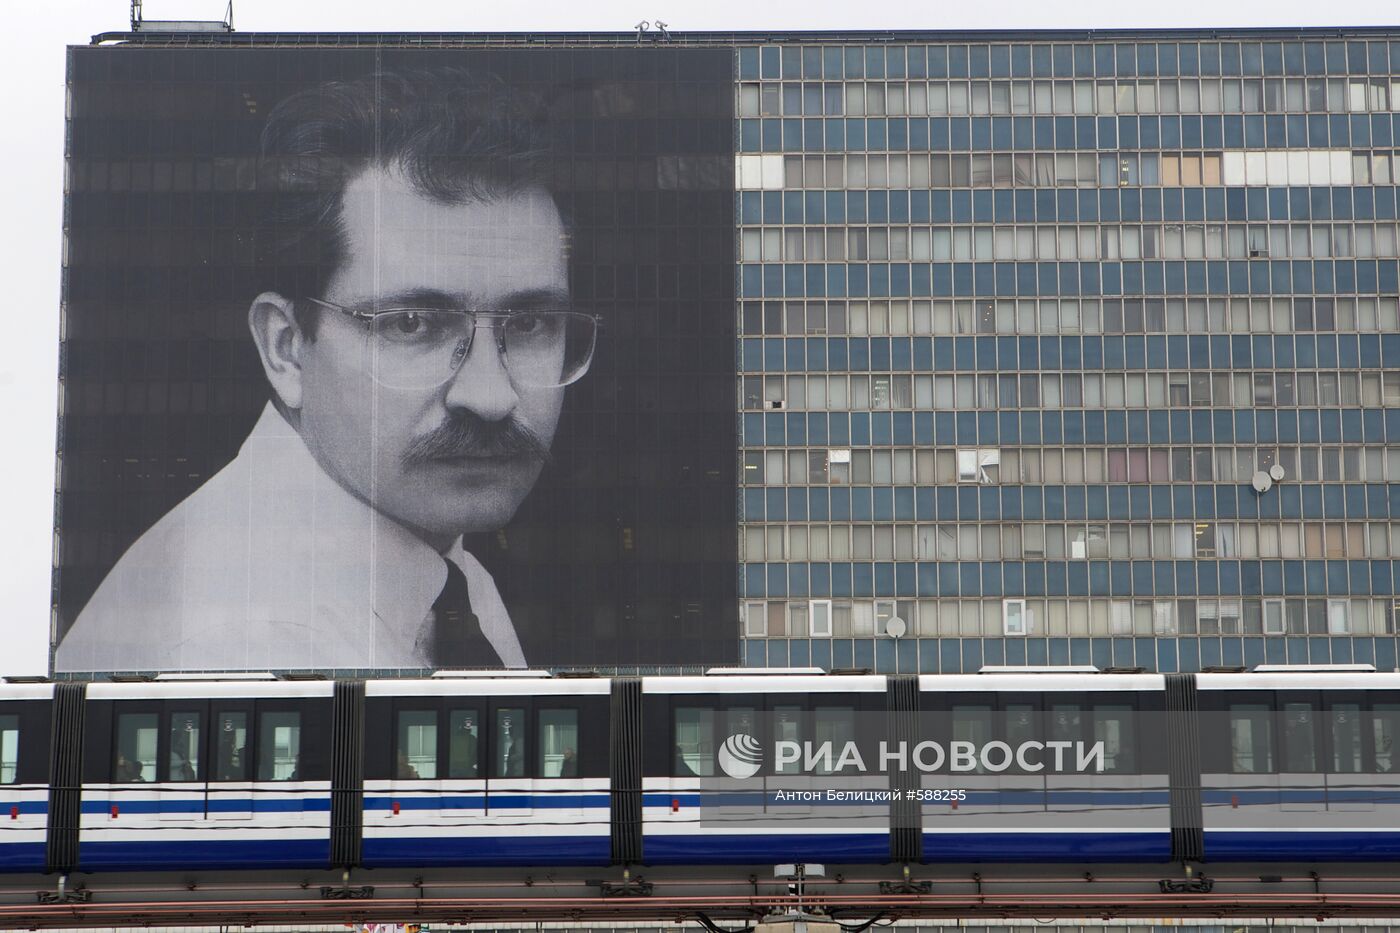 Плакат с изображением В.Листьева на телецентре "Останкино"